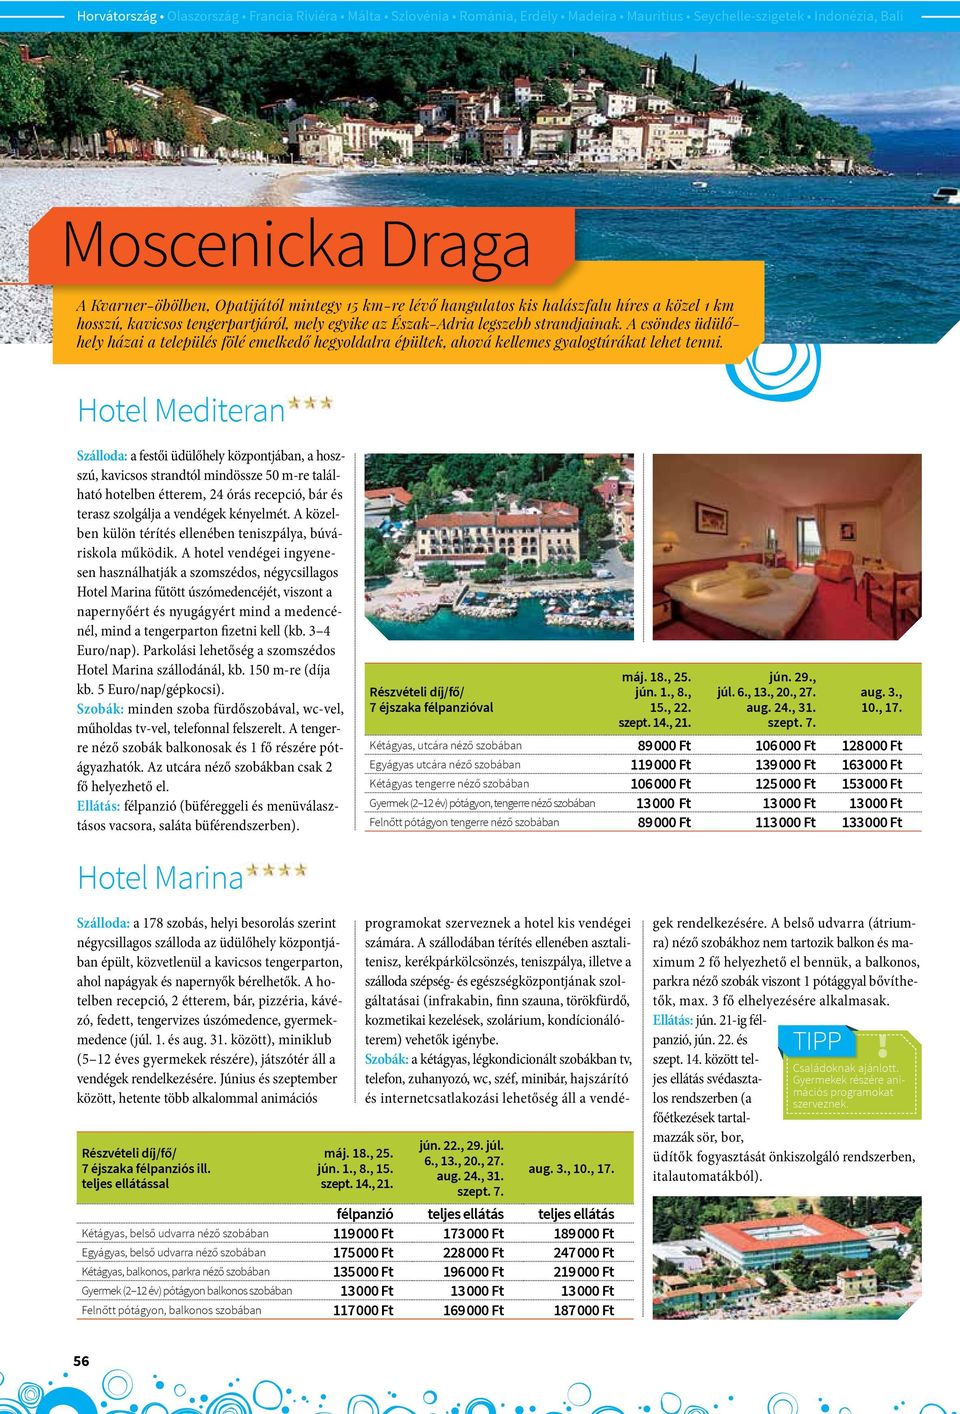 Hotel Mediteran Szálloda: a festői üdülőhely központjában, a hoszszú, kavicsos strandtól mindössze 50 m-re található hotelben étterem, 24 órás recepció, bár és terasz szolgálja a vendégek kényelmét.